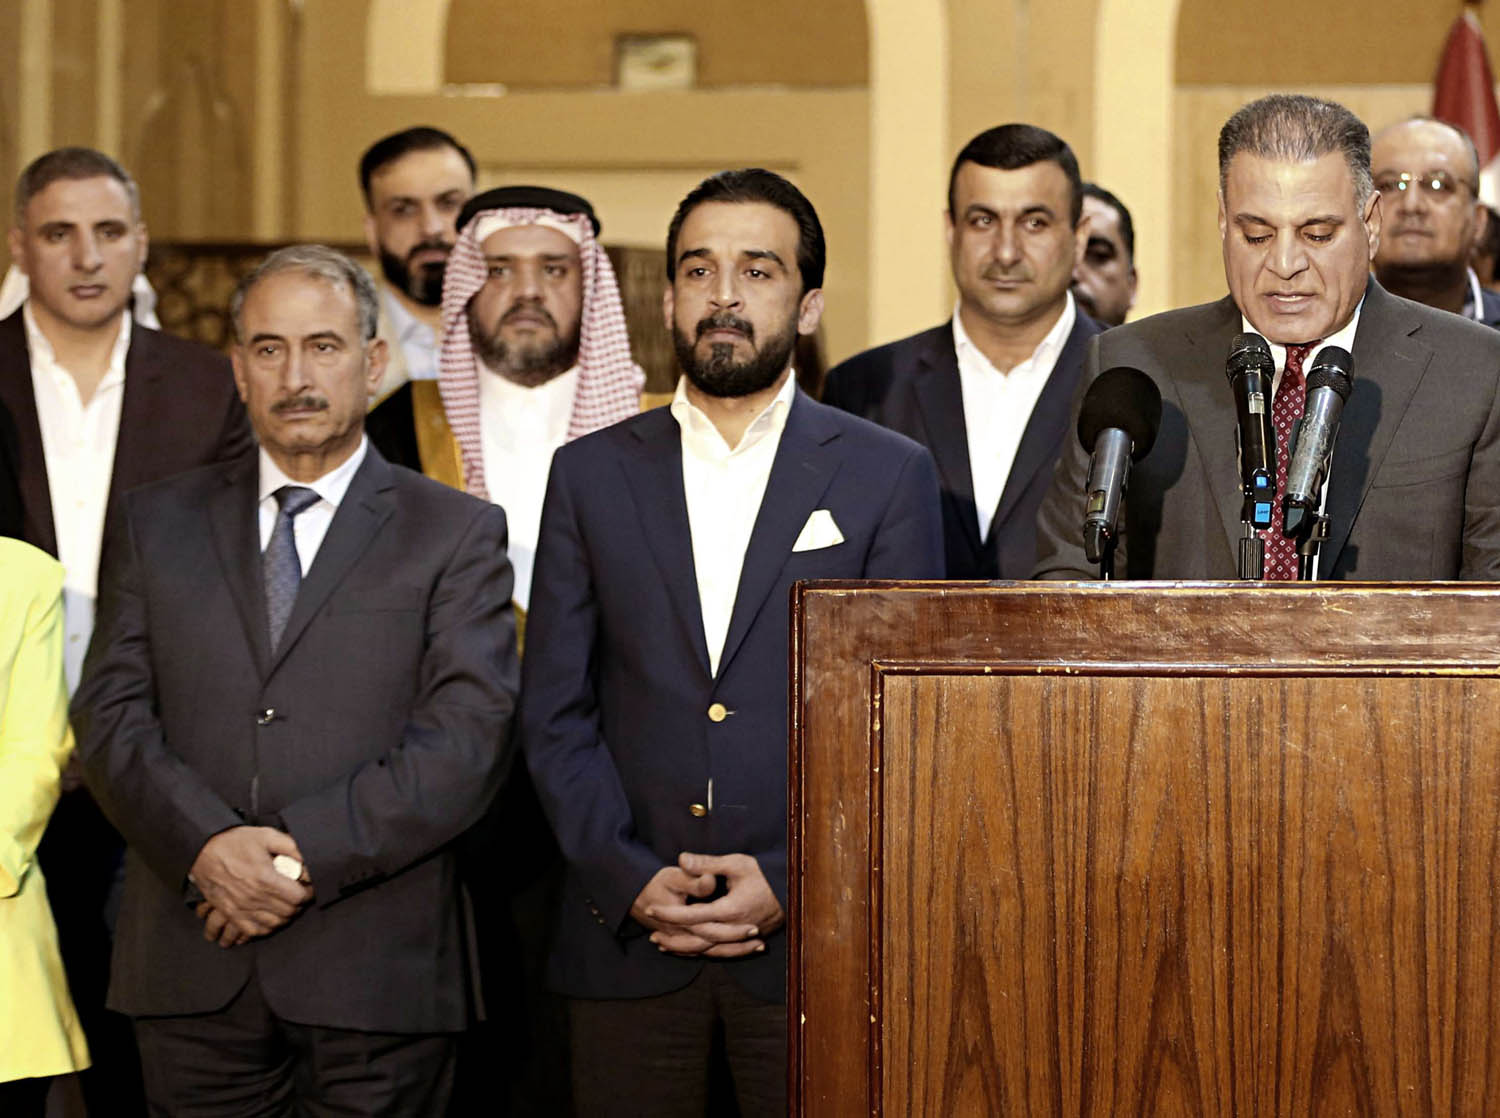 رئيس البرلمان العراقي المدعوم إيرانيا محمد الحلبوسي مع اعضاء في كتلته البرلمانية